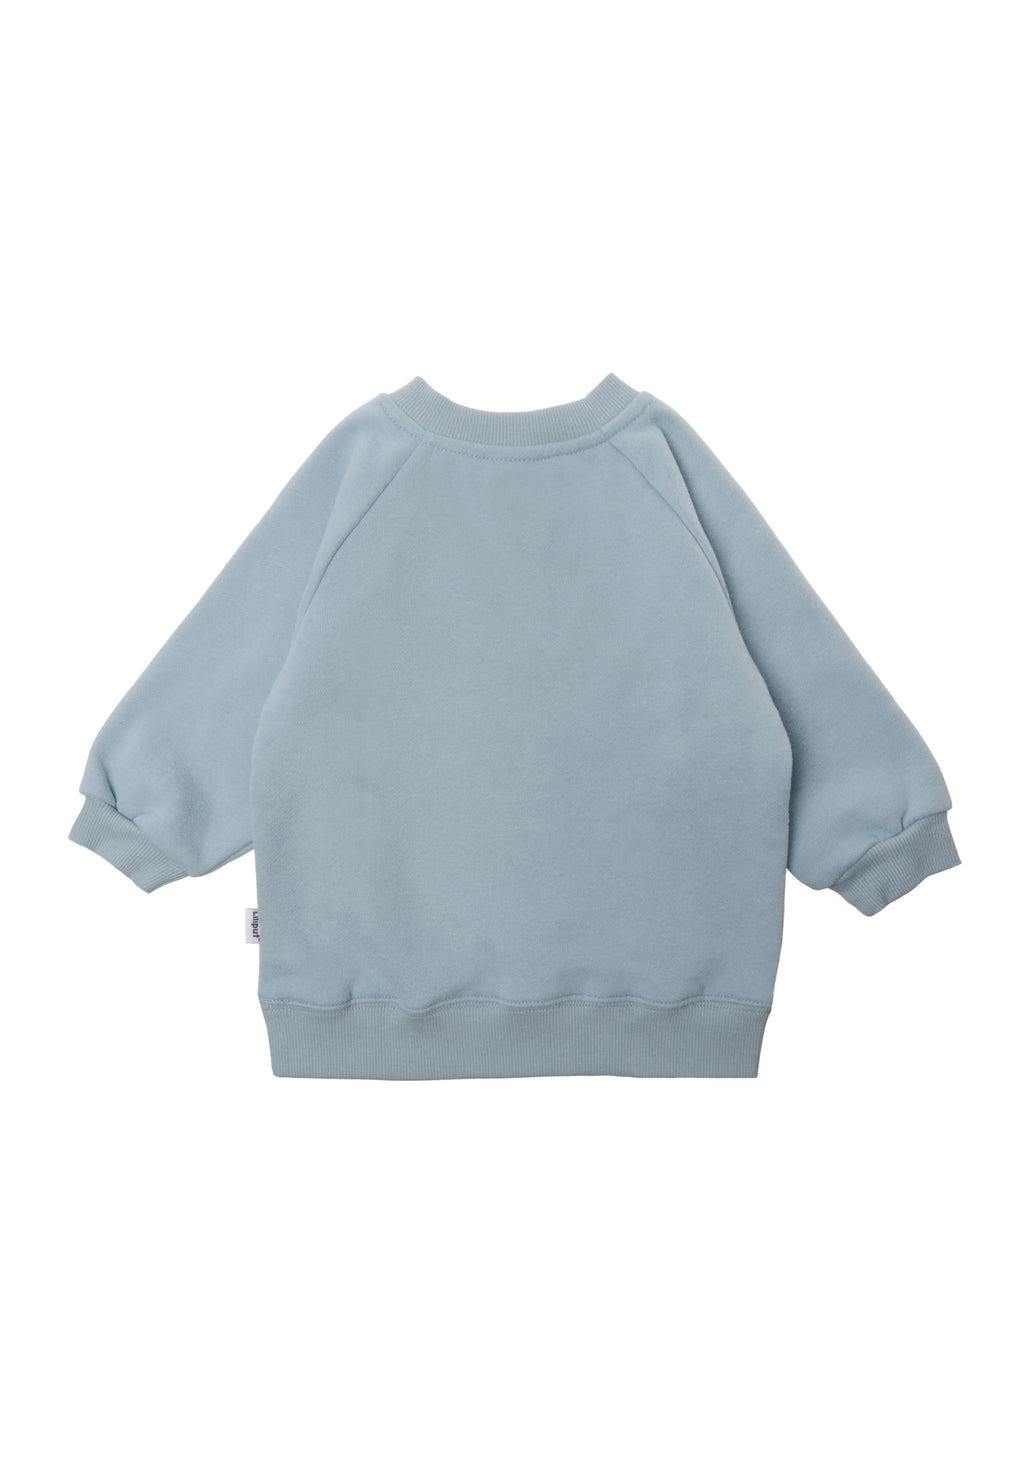 Sweatshirt in kuschelweicher Qualität mit Raglanärmeln und Ribbündchen in hellblau.